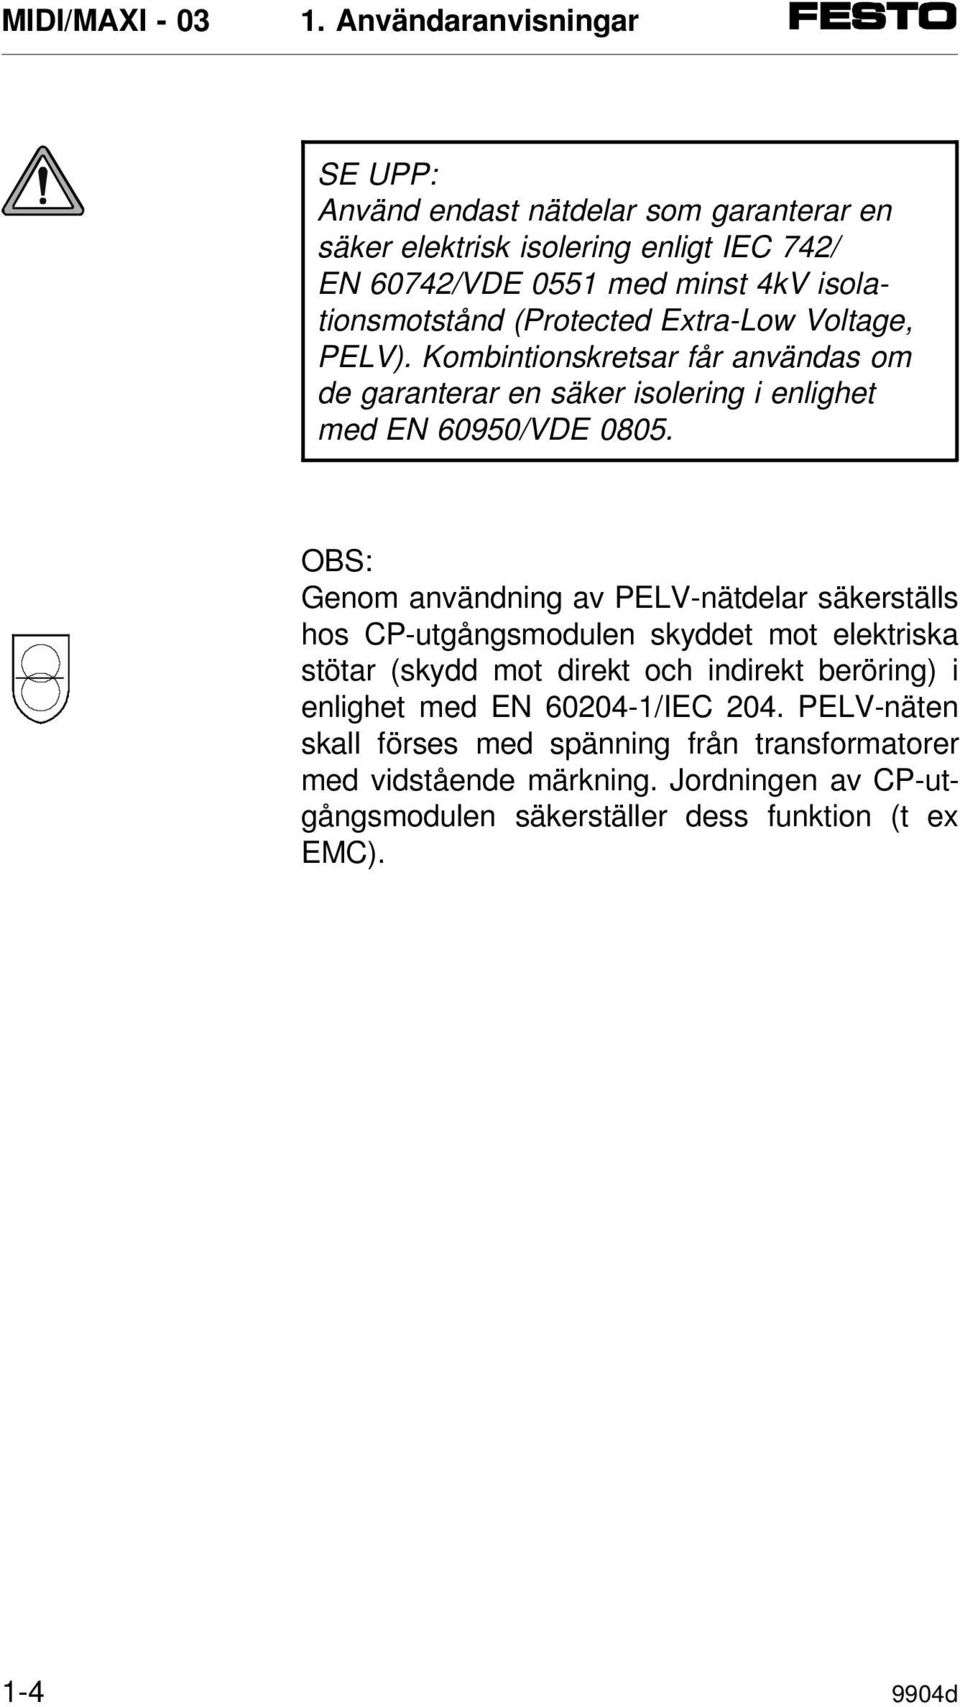 OBS: Genom användning av PELV-nätdelar säkerställs hos CP-utgångsmodulen skyddet mot elektriska stötar (skydd mot direkt och indirekt beröring) i enlighet med EN